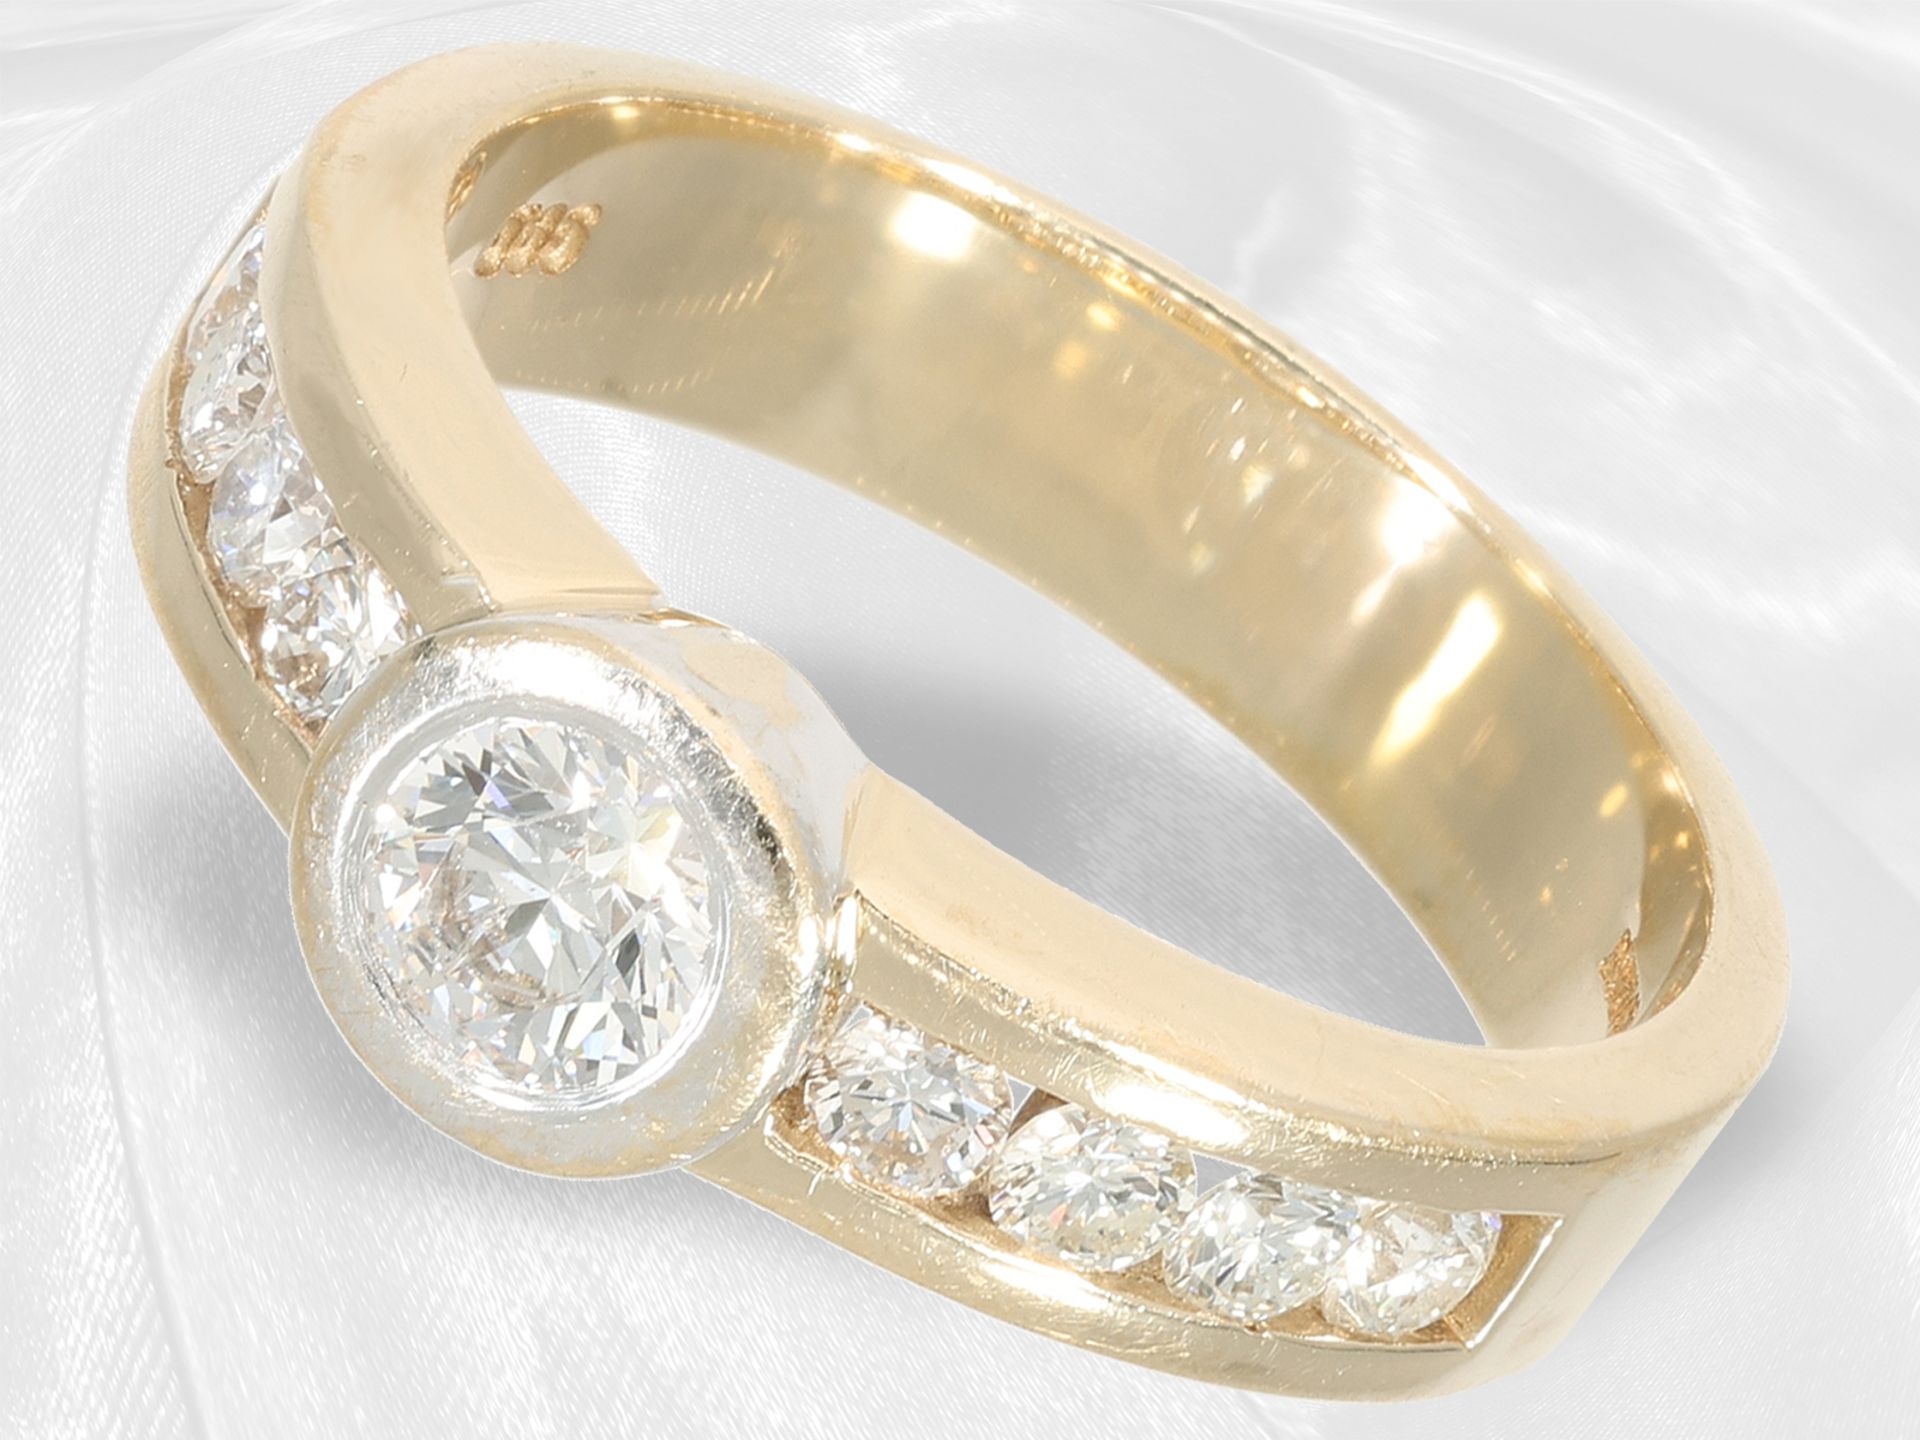 Ring: Markenschmuck, goldener Brillantring von Christ mit Zertifikat, ca. 1ct Brillanten - Bild 2 aus 4